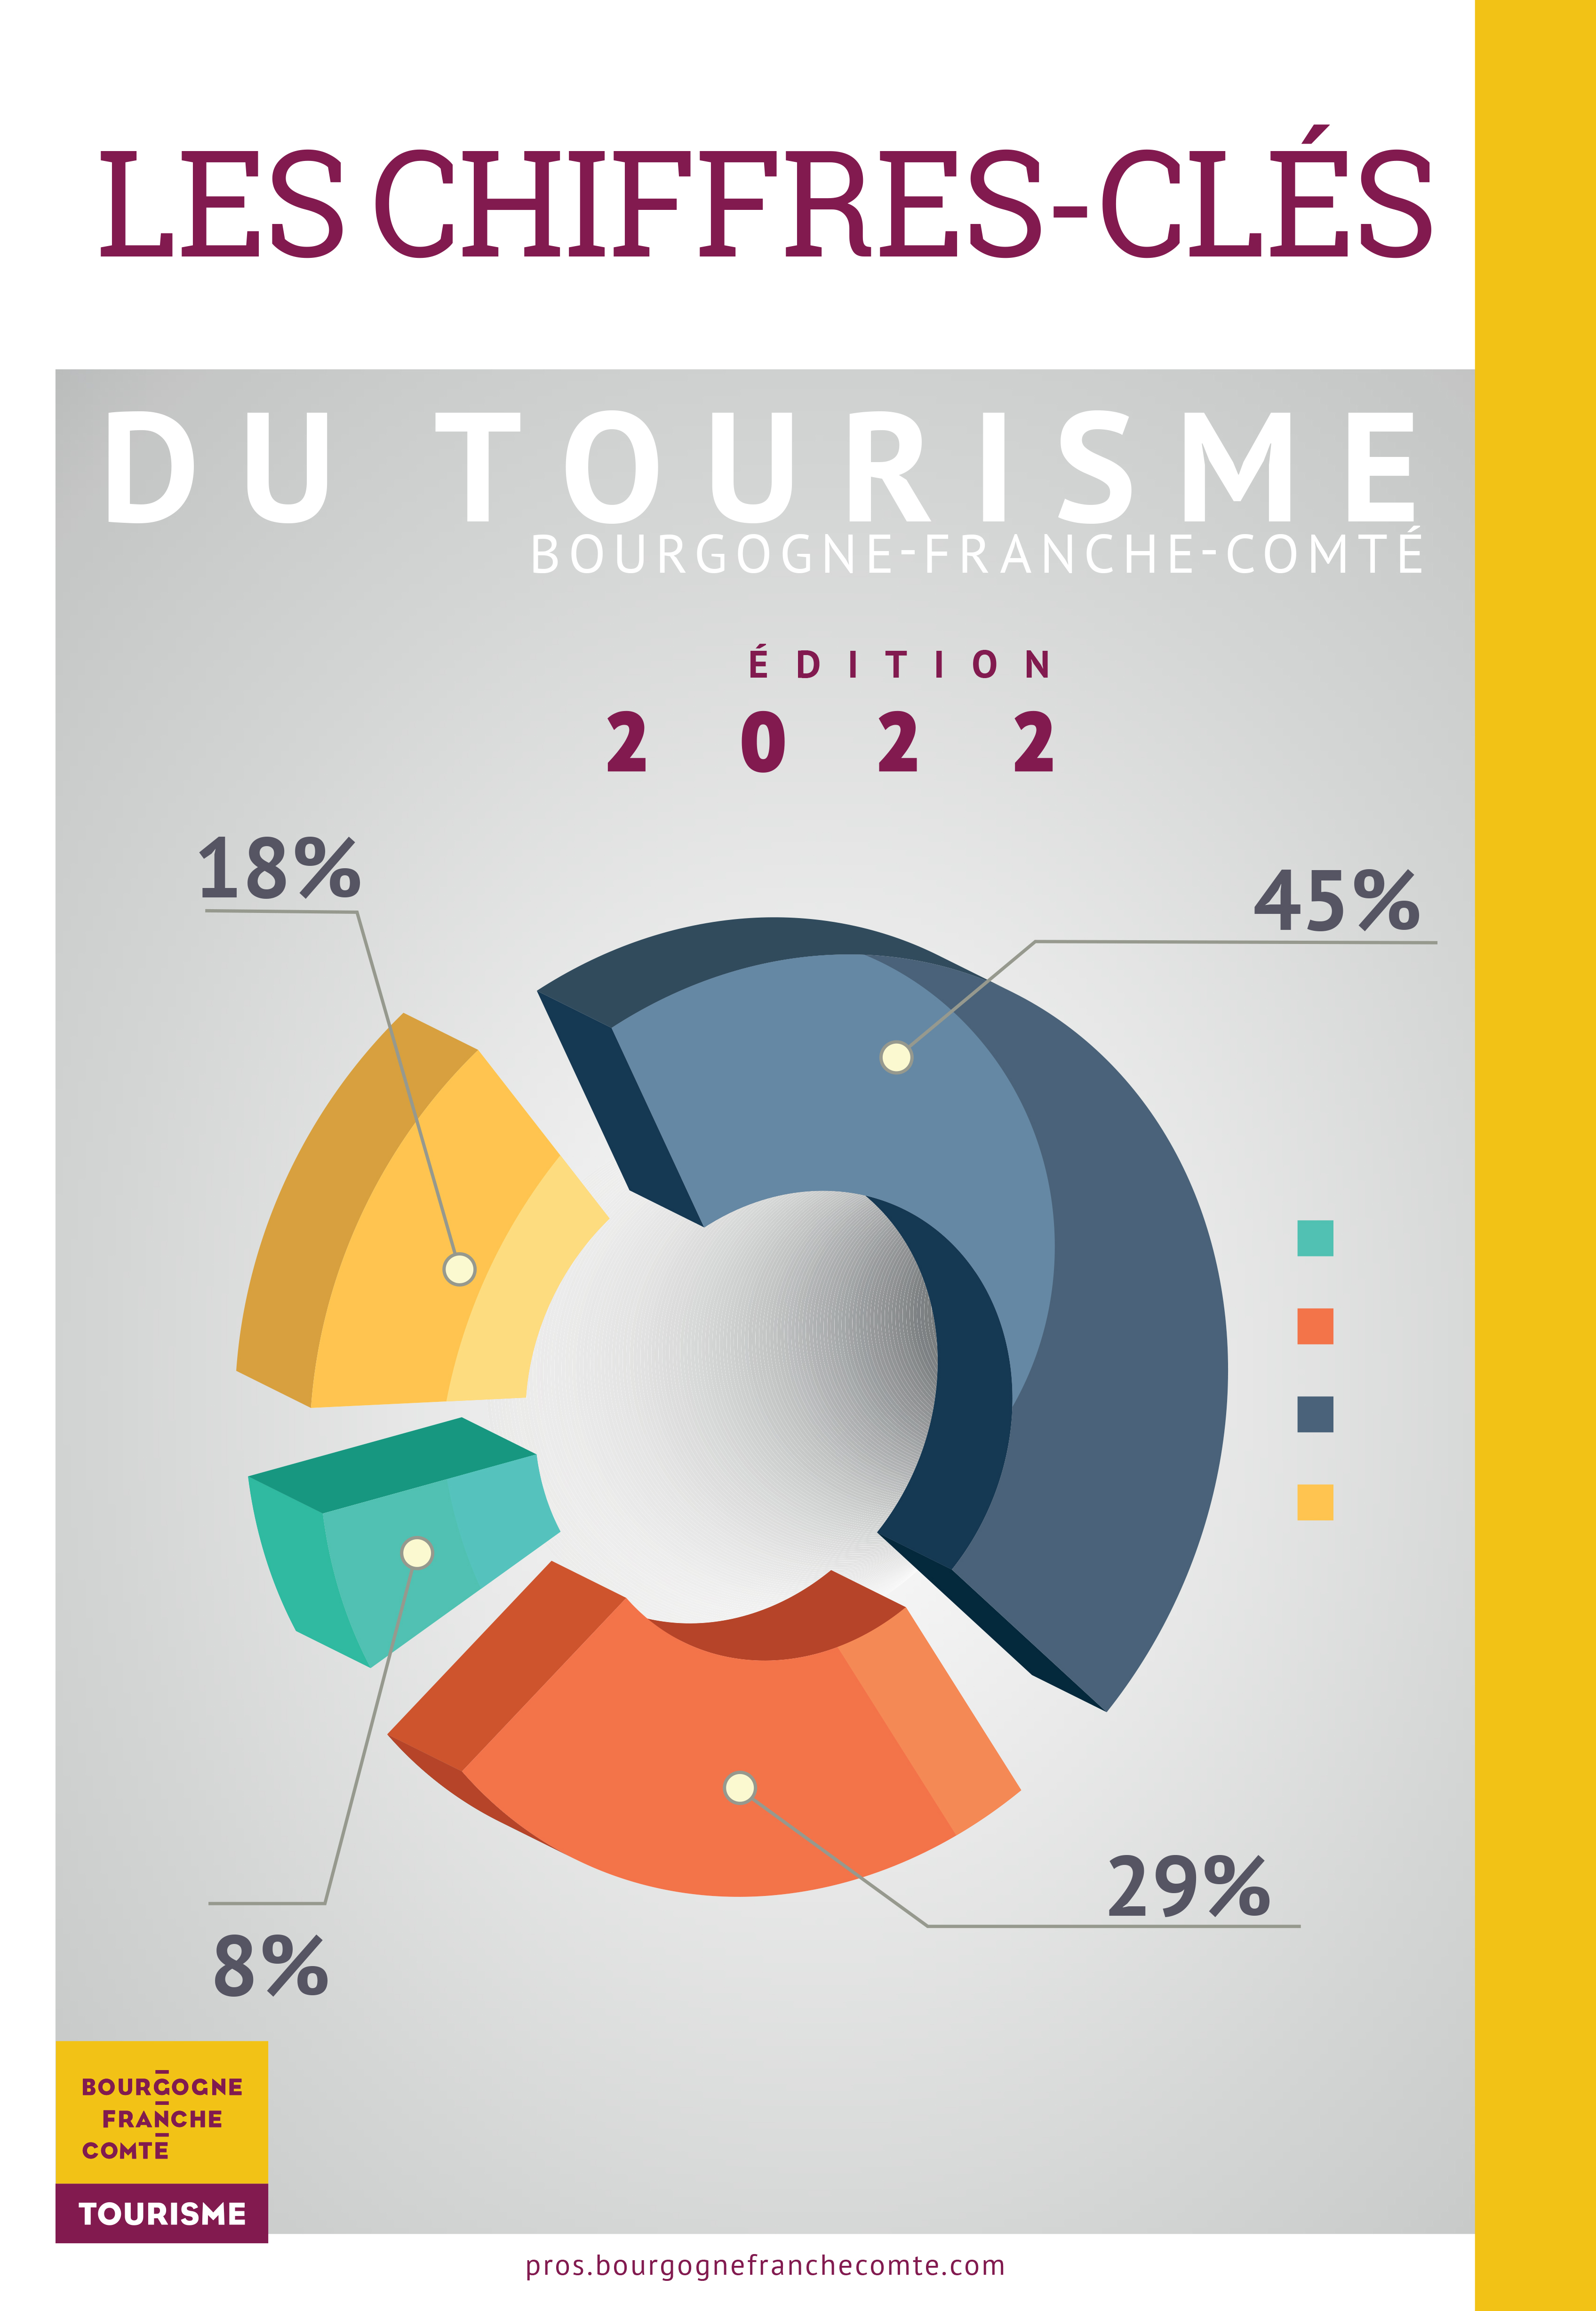 Les chiffres-clés du tourisme en Bourgogne-Franche-Comté - Edition 2022